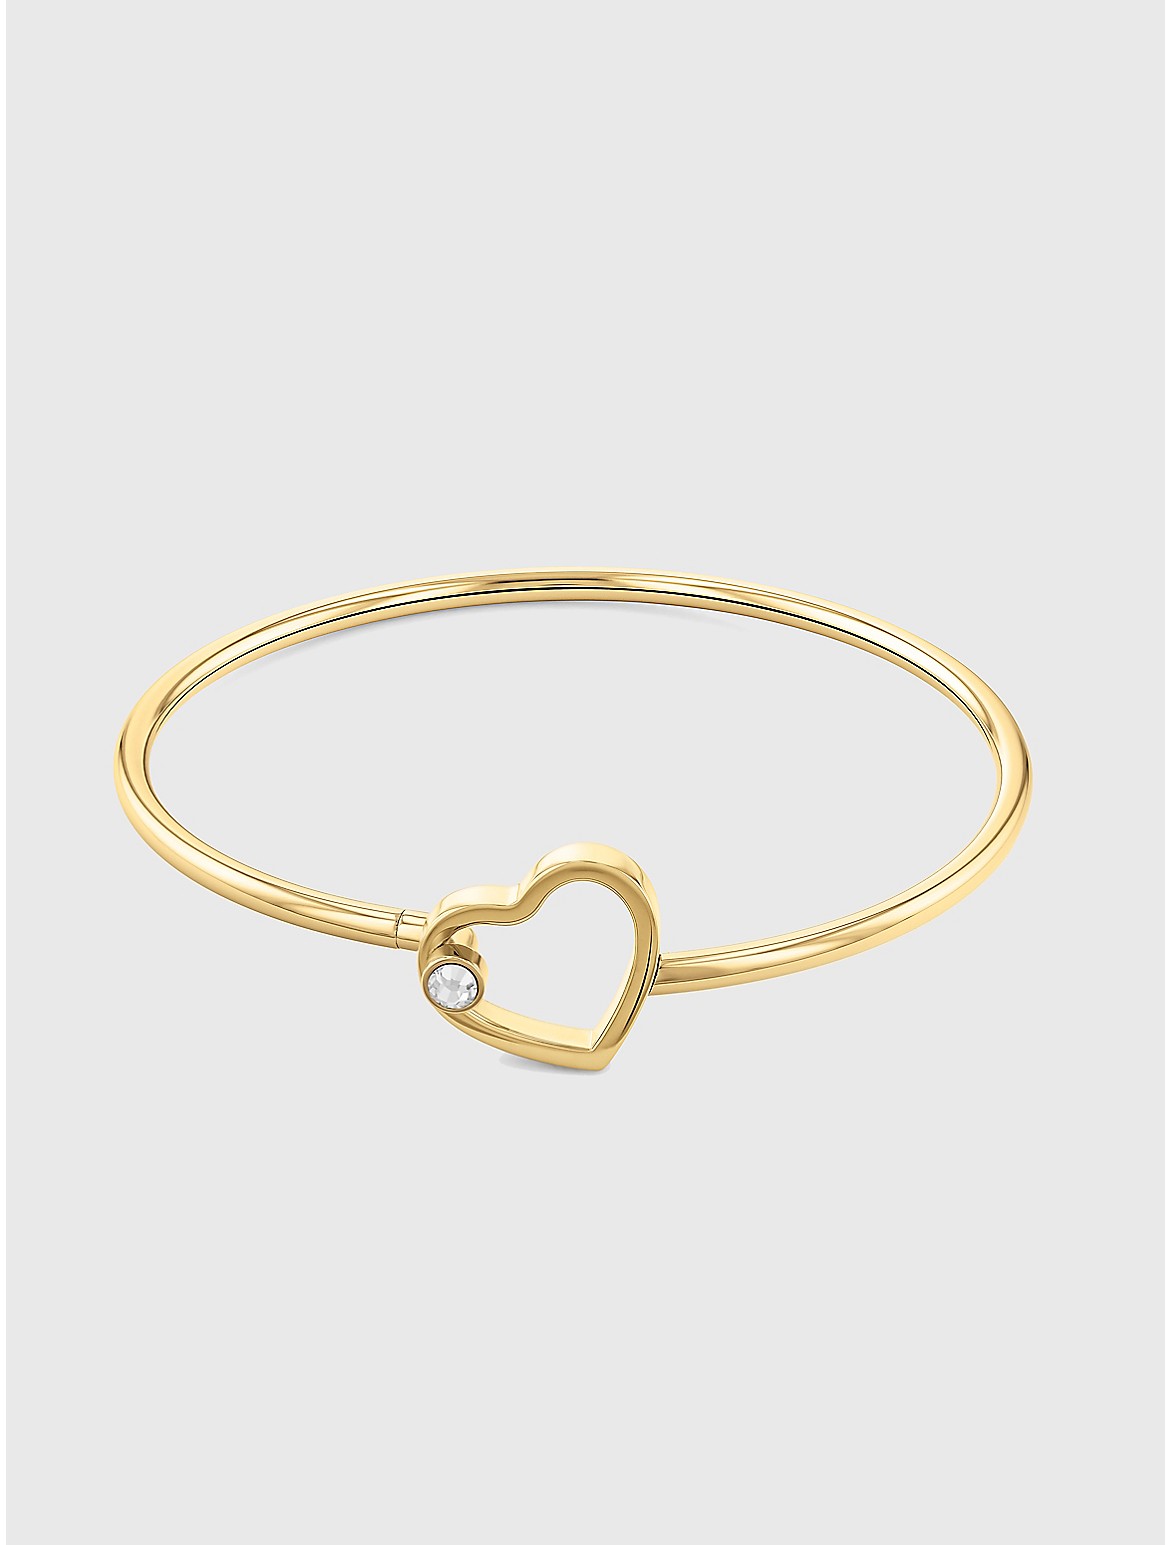 Tommy Hilfiger Women's Gold-Tone Heart Bracelet - Metallic